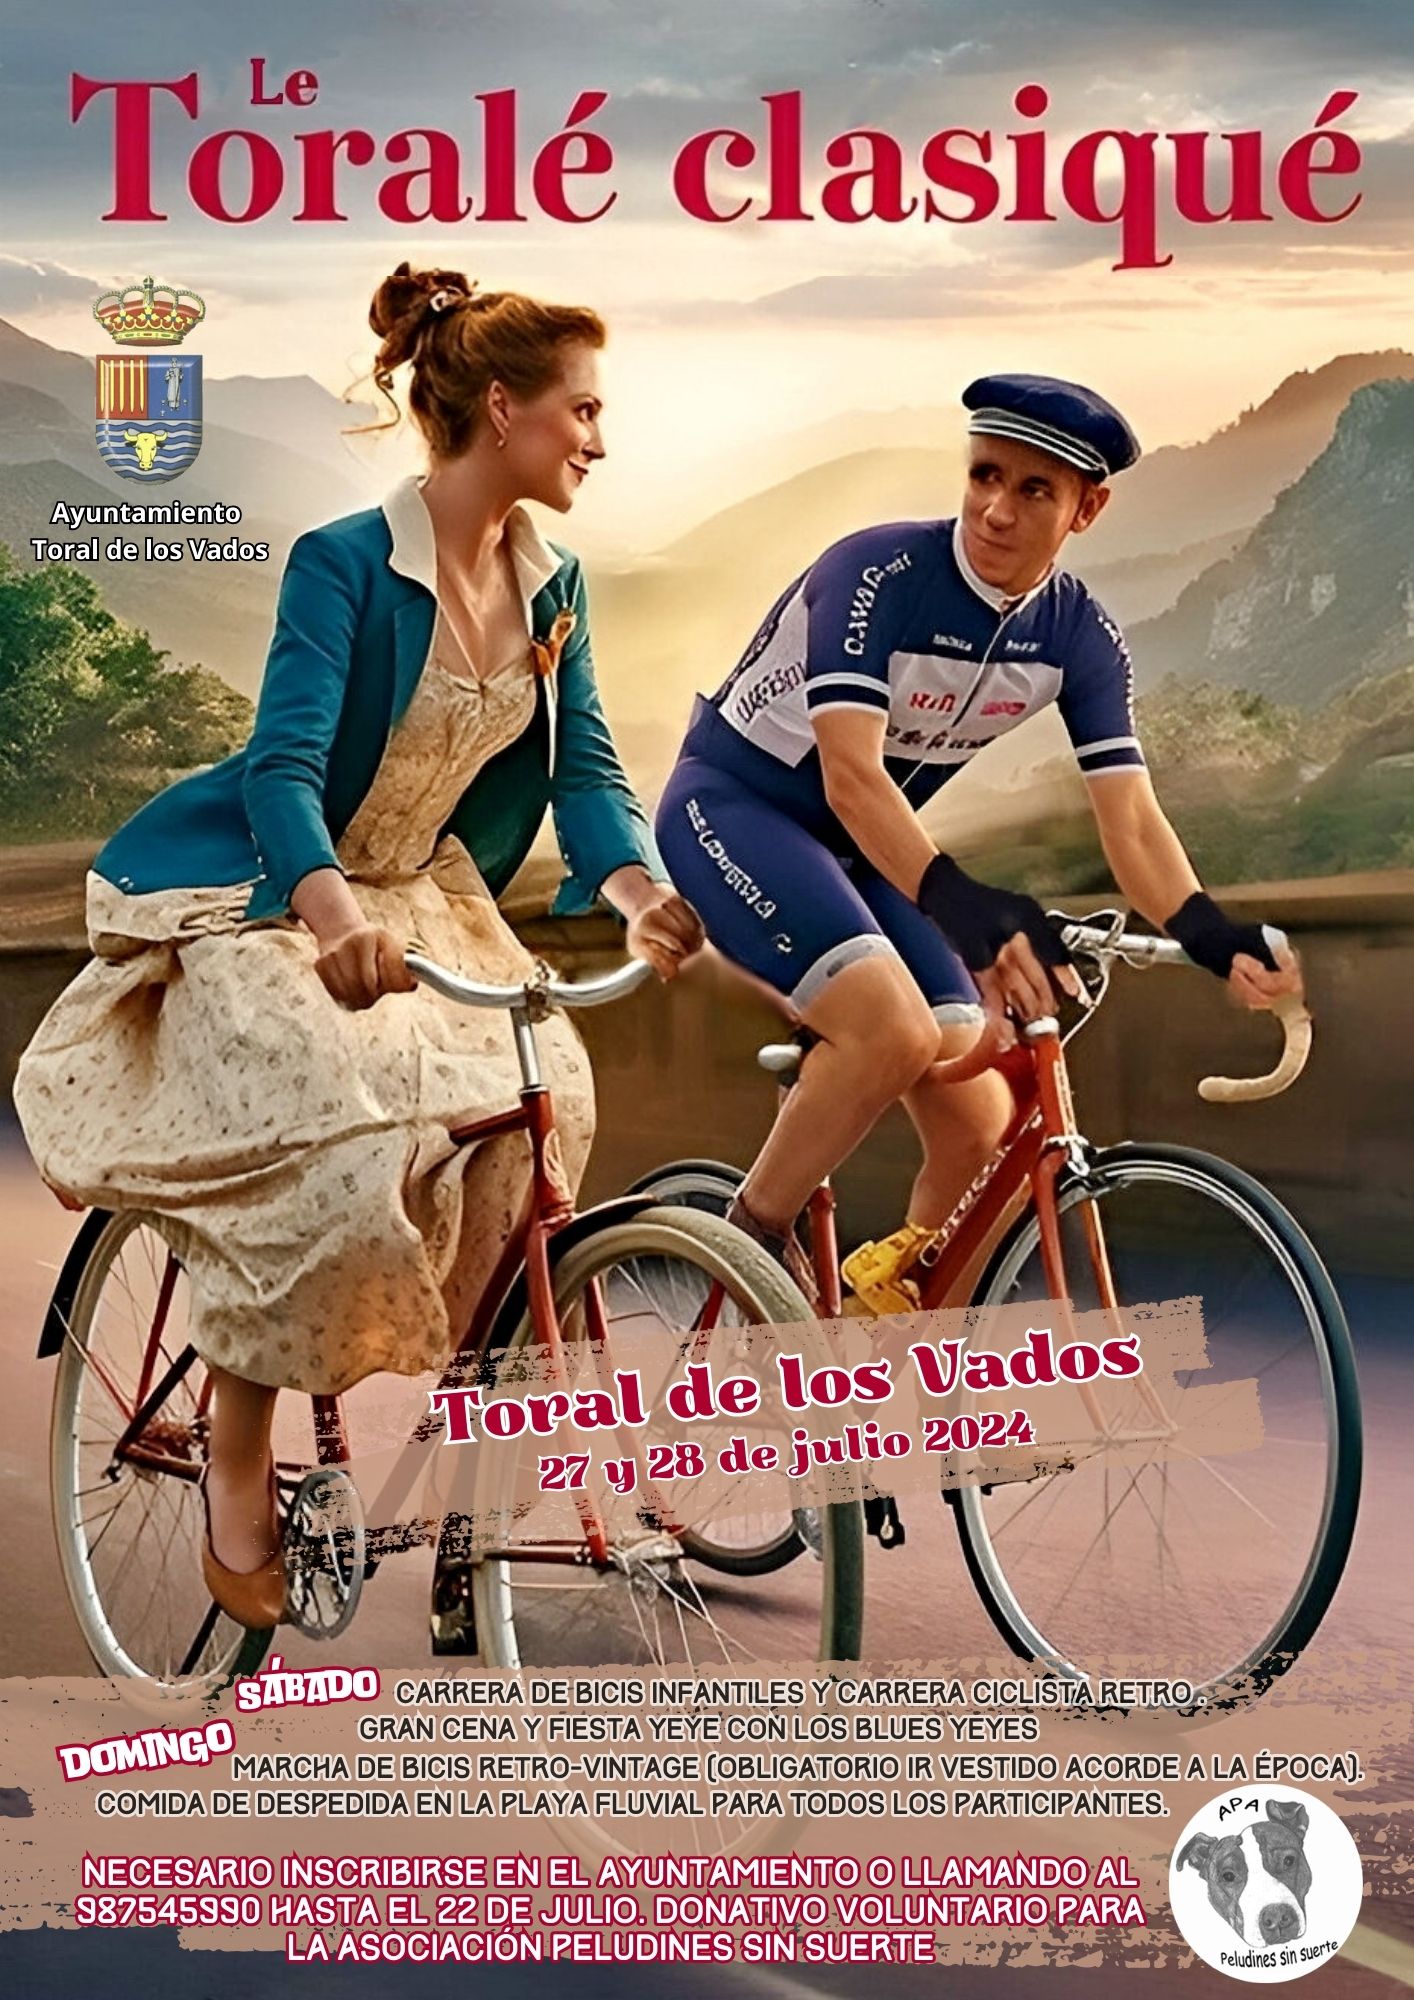 Le Toralé Clasiqué: ¡Las bicicletas son para el verano! en Toral de los Vados 2